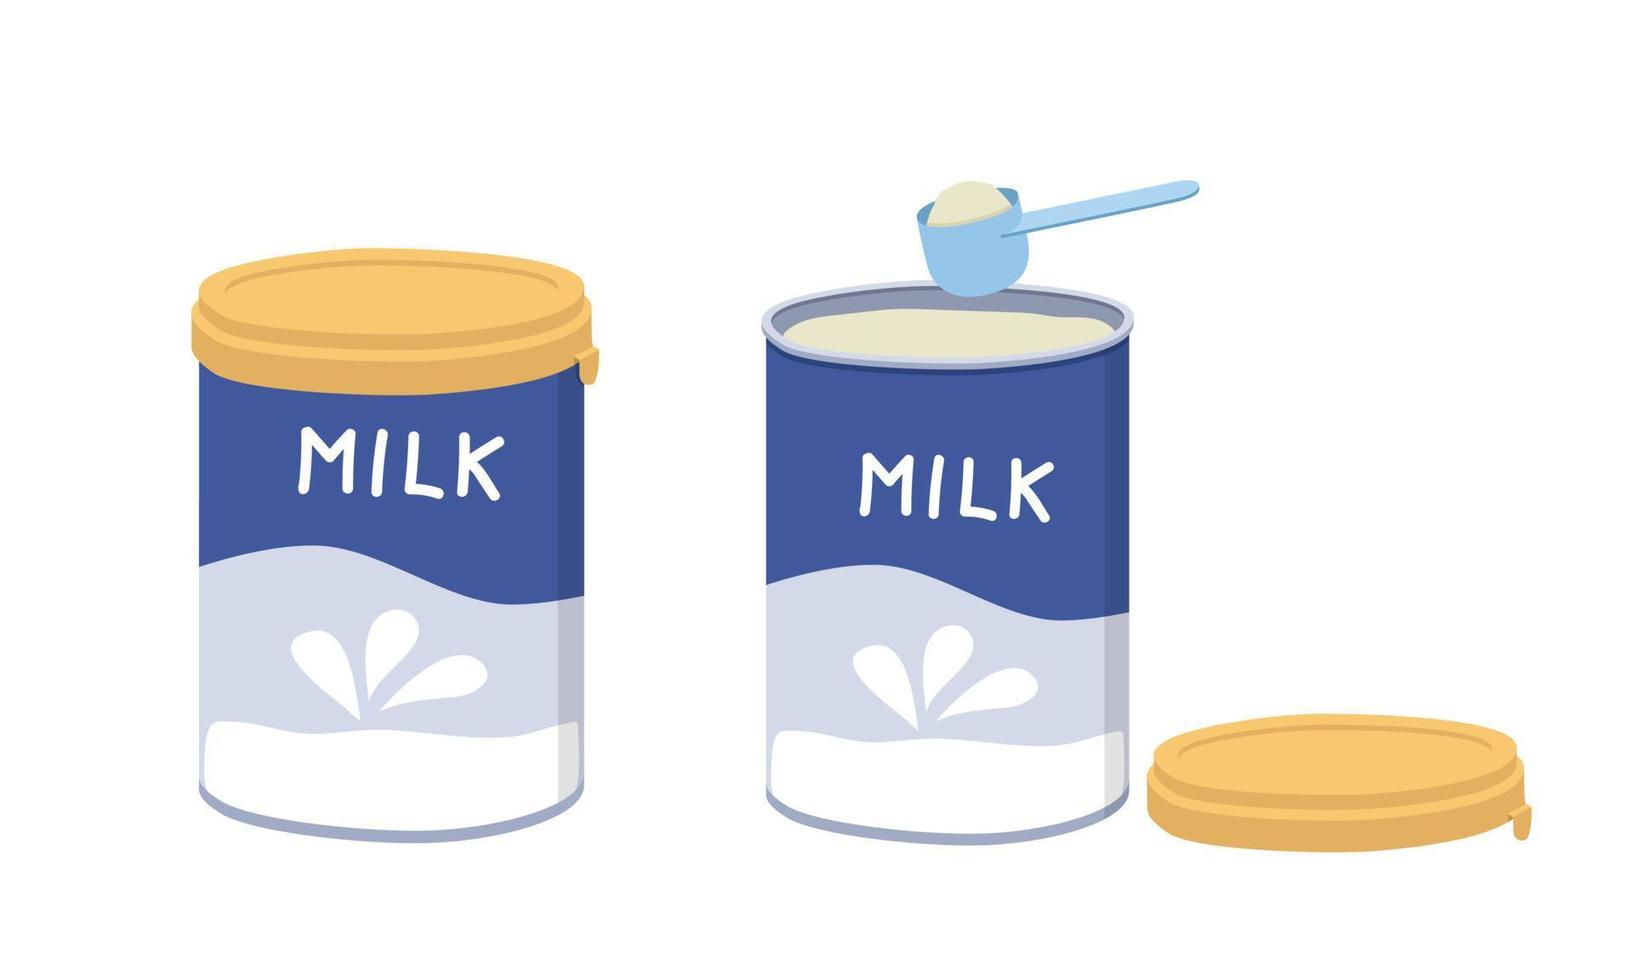 conjunto de imágenes prediseñadas de leche en polvo para bebés abiertas y cerradas. leche en polvo simple en lata de aluminio cuchara dosificadora de plástico azul completo o ilustración de vector plano de cuchara. dibujo enlatado de fórmula de leche en polvo